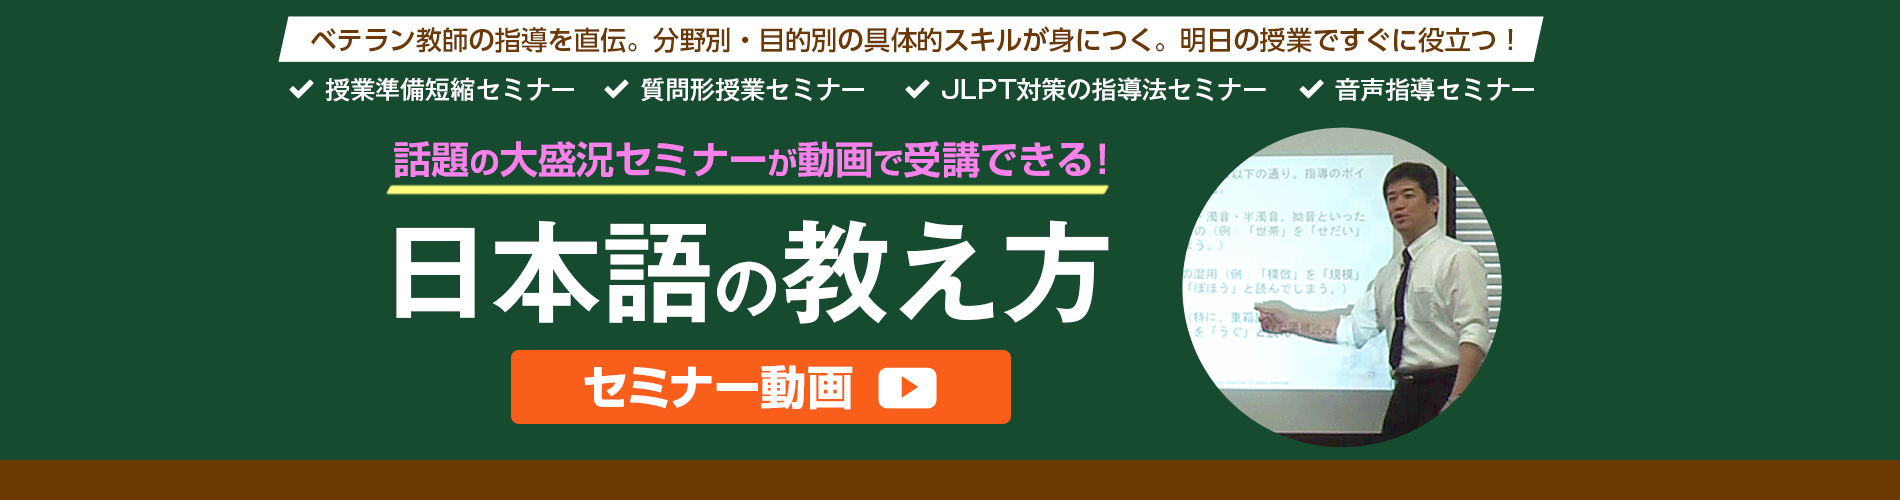 日本語能力試験N1対策WEBコース